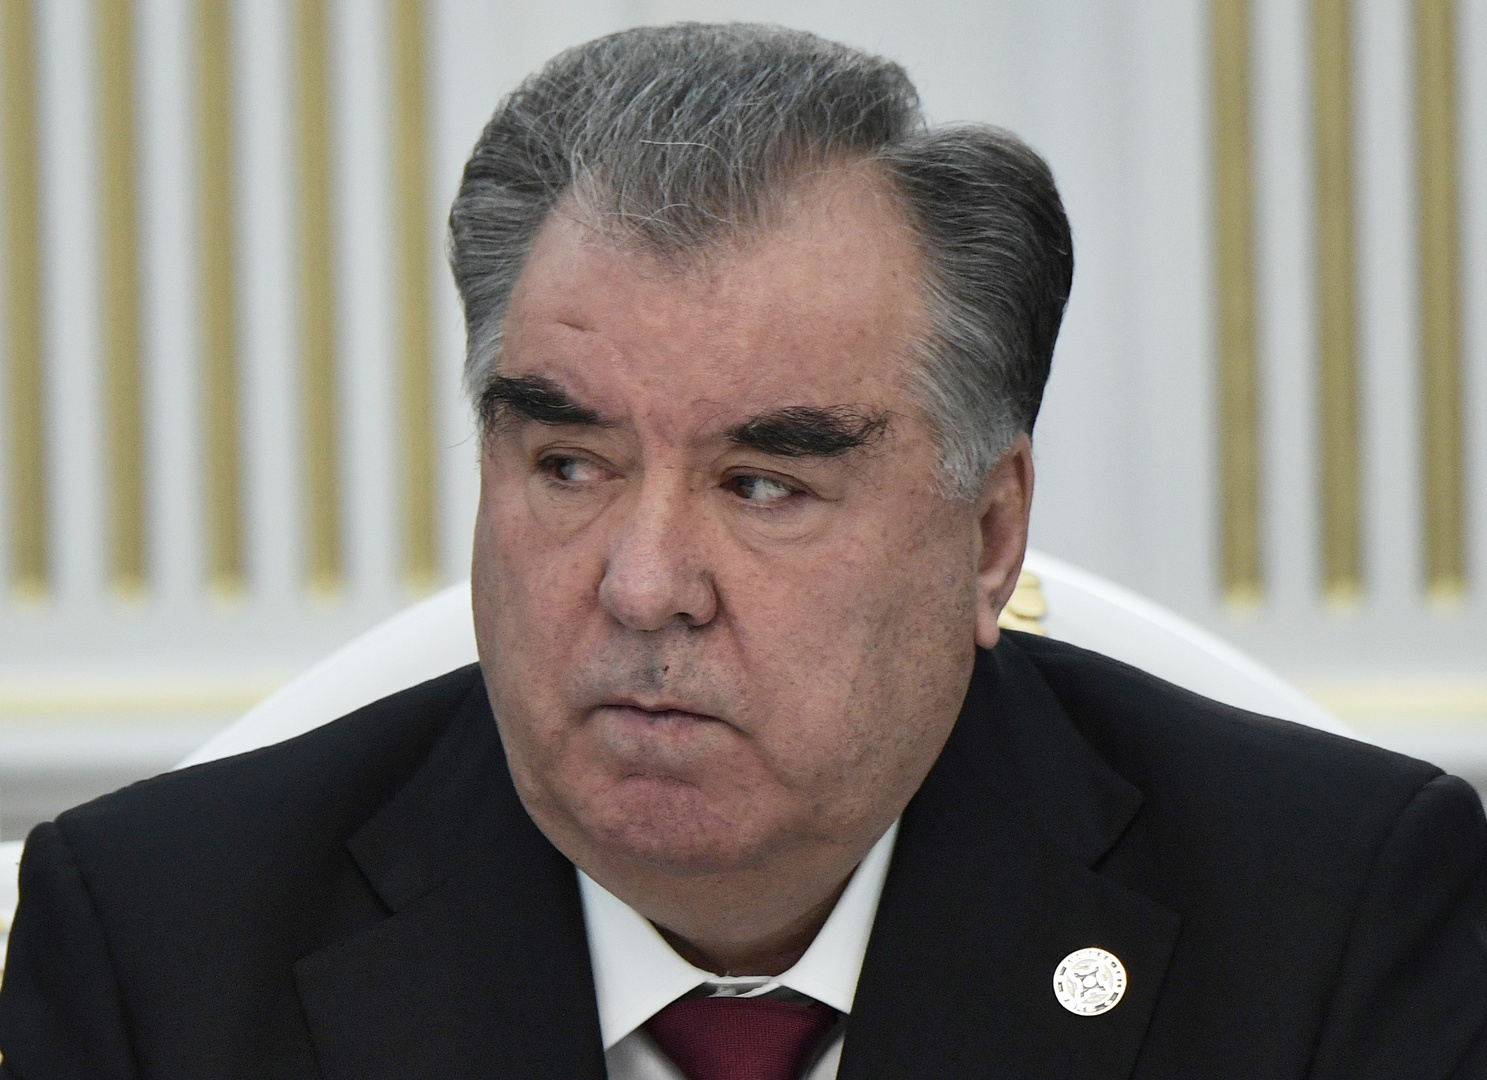 رئيس طاجيكستان: أفغانستان على حافة كارثة إنسانية